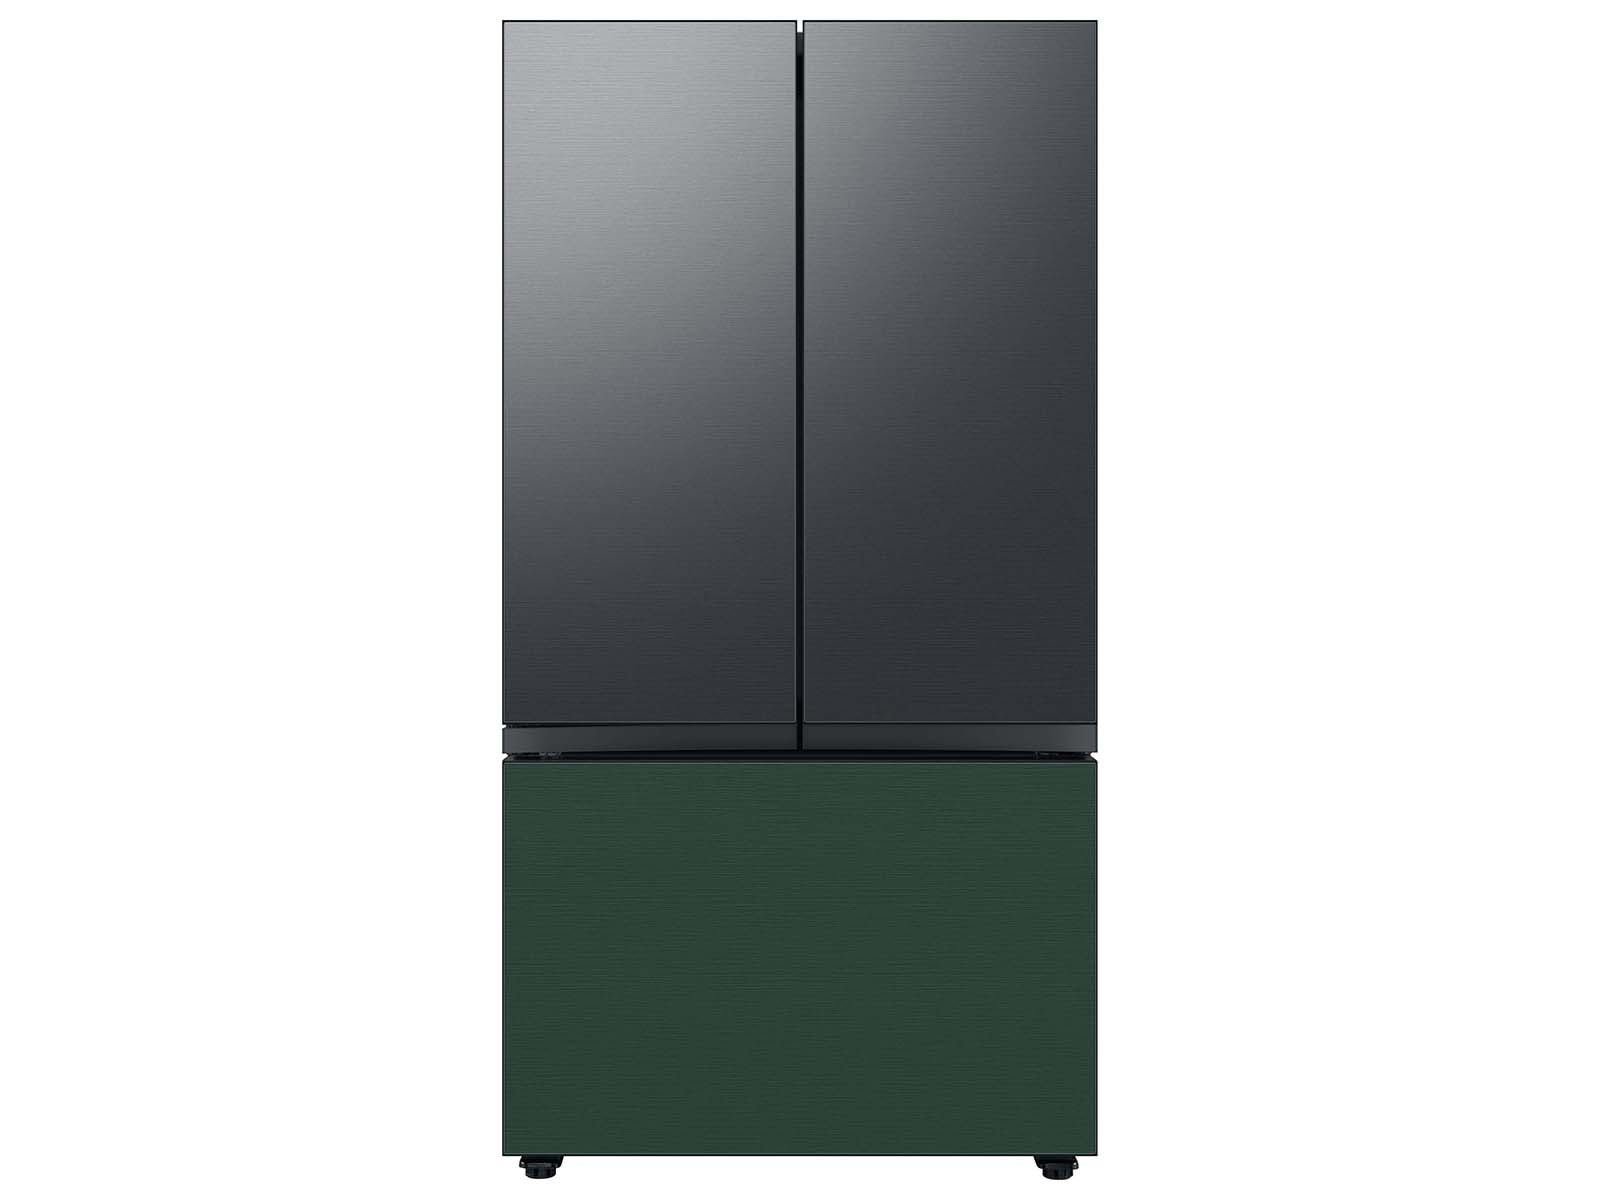 Thumbnail image of Bespoke 3-Door French Door Refrigerator Panel in Emerald Green Steel - Bottom Panel